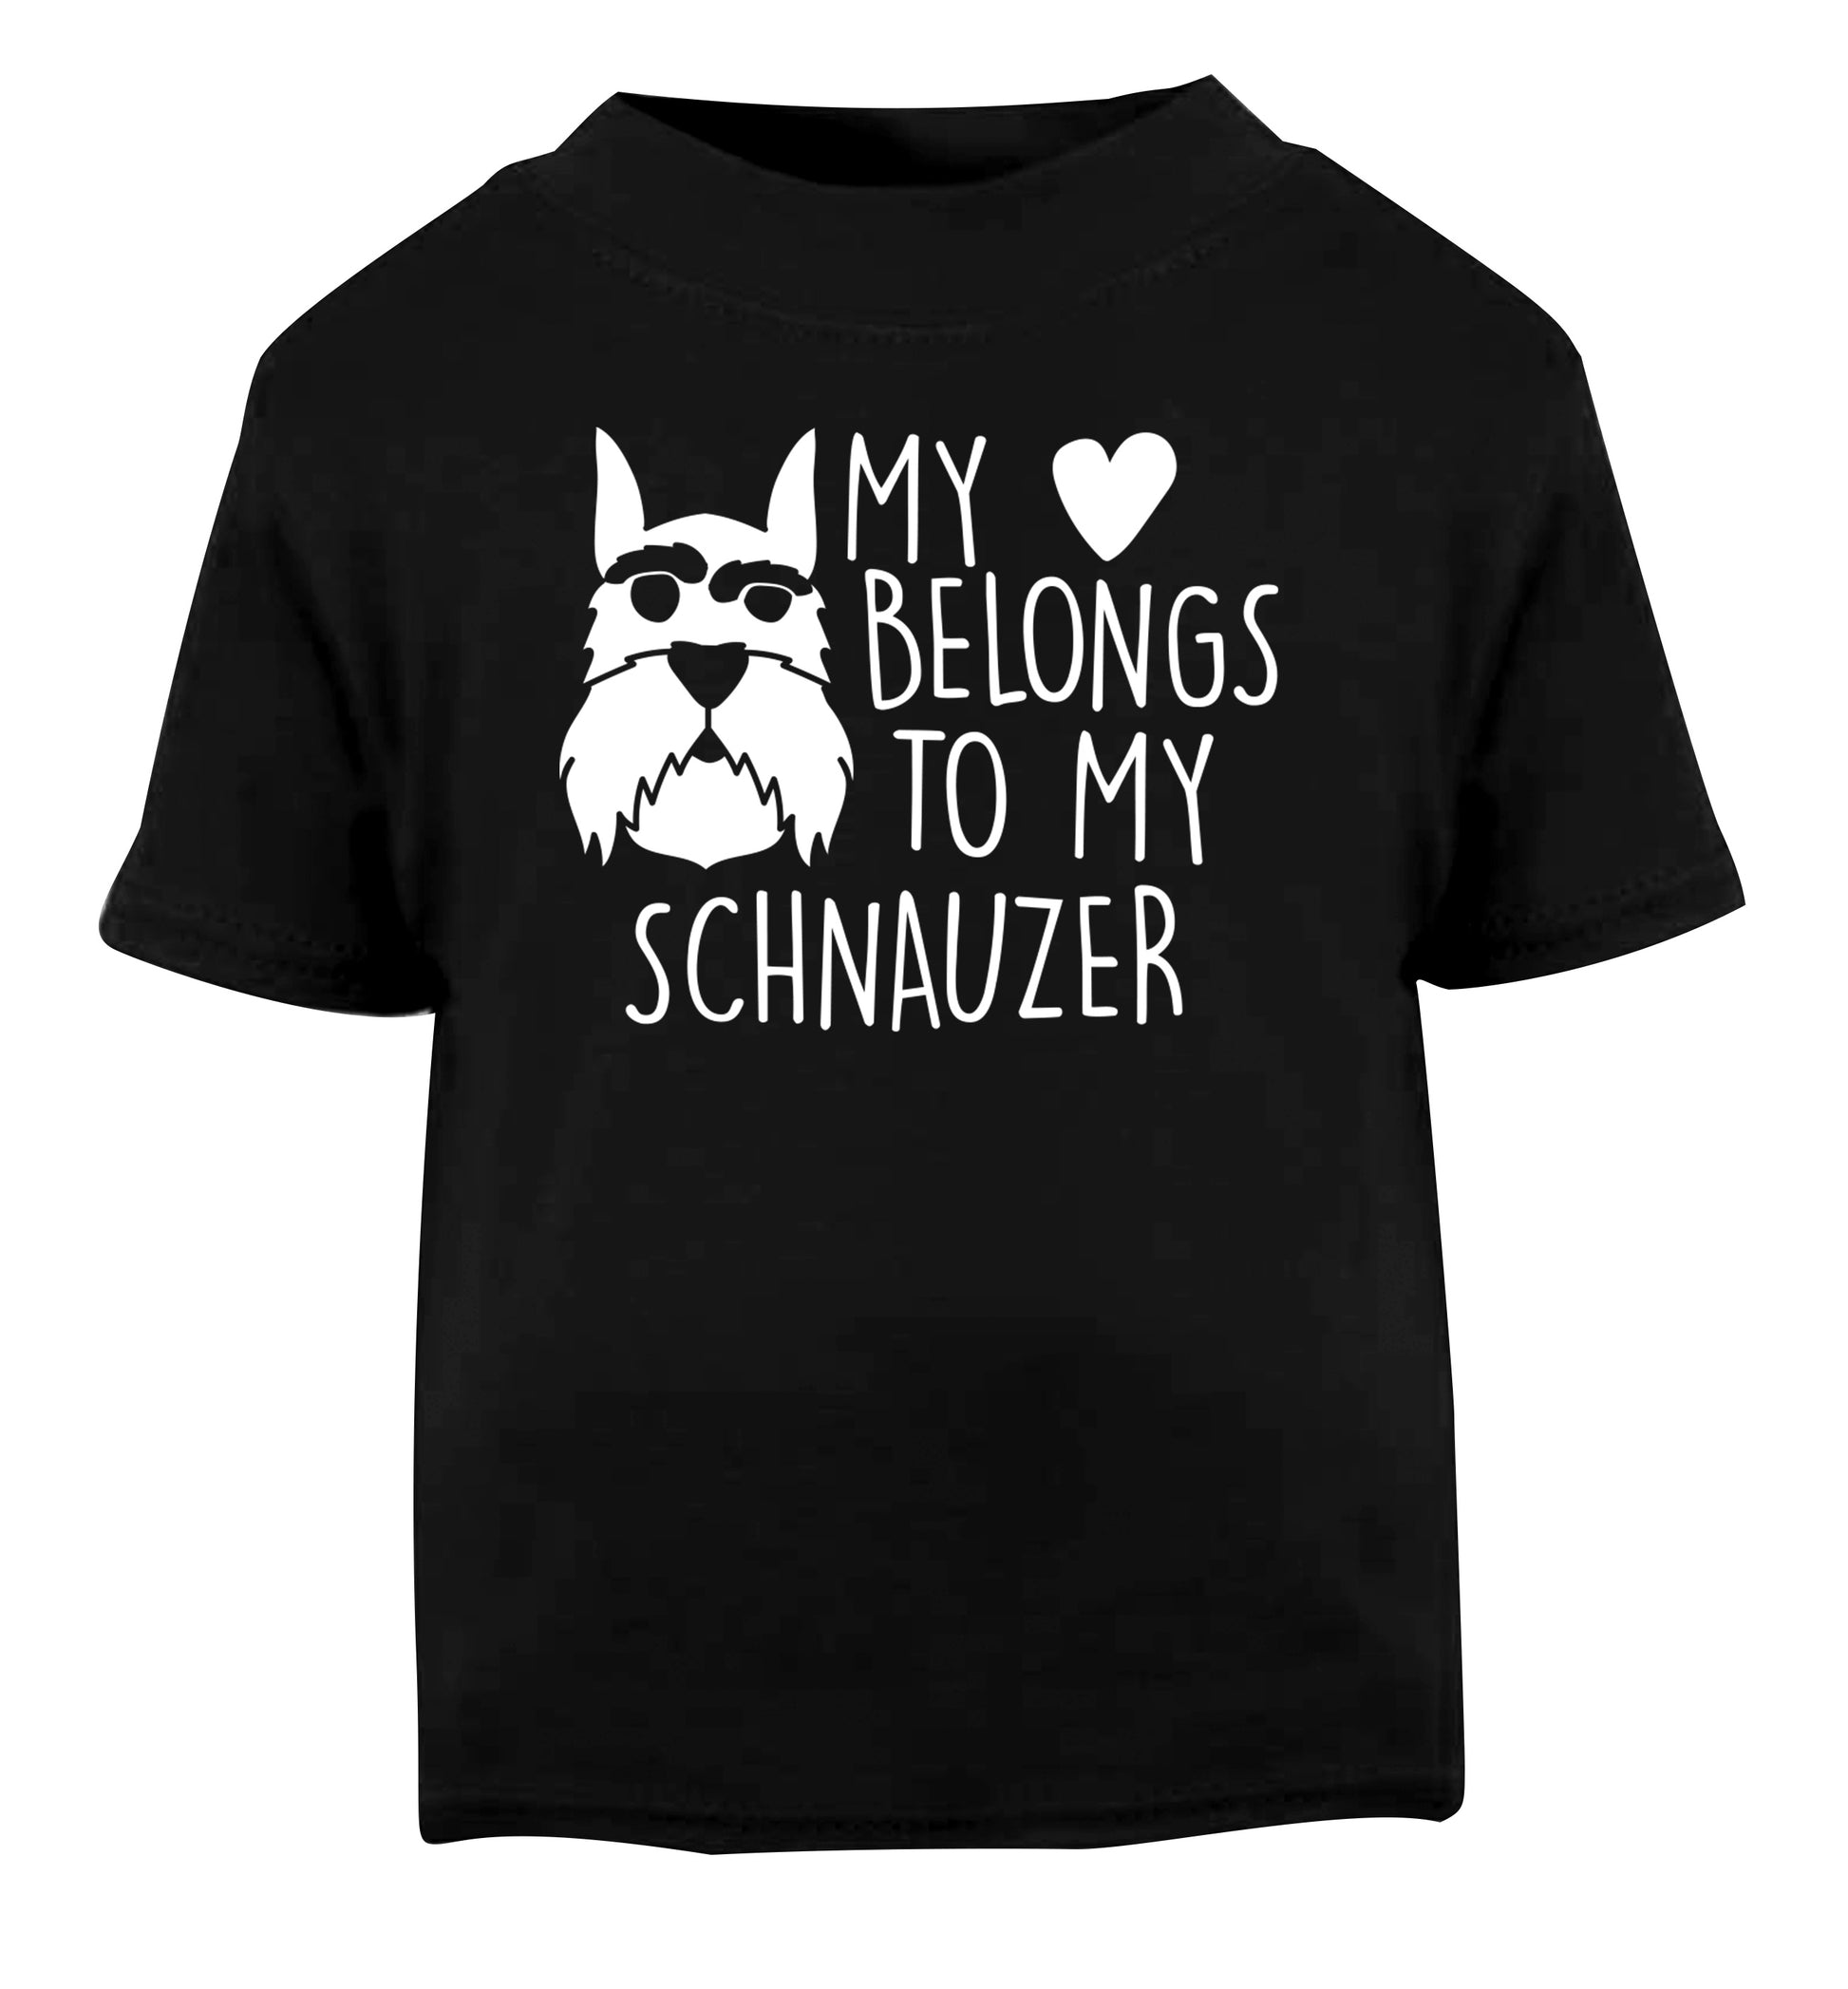 My heart belongs to my schnauzer Black Baby Toddler Tshirt 2 years